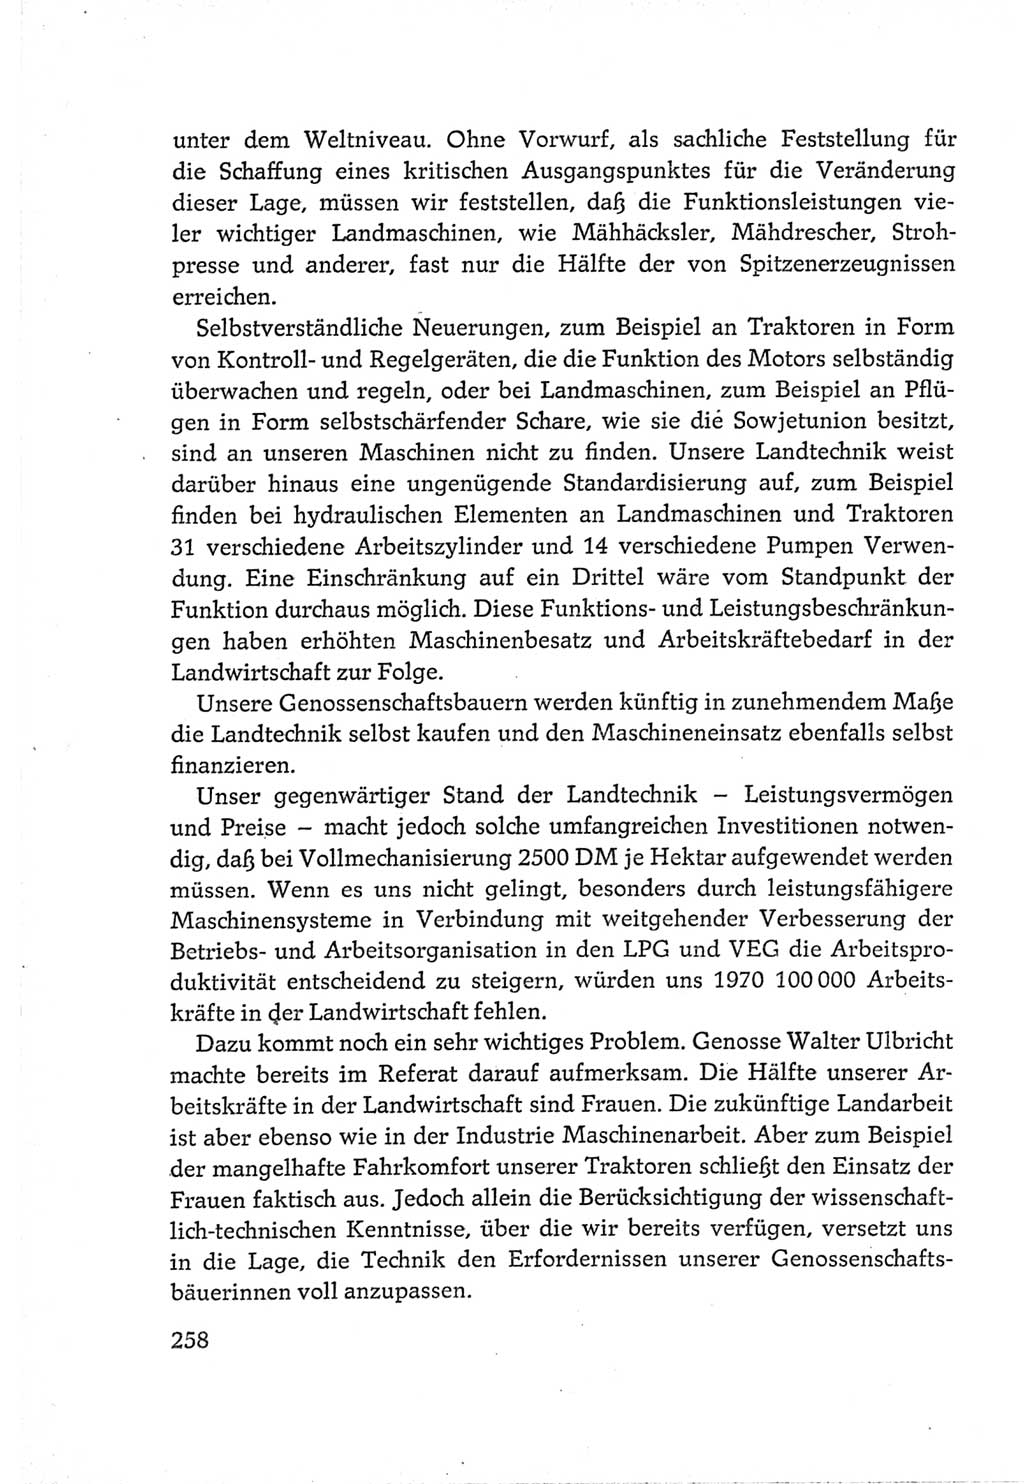 Protokoll der Verhandlungen des Ⅵ. Parteitages der Sozialistischen Einheitspartei Deutschlands (SED) [Deutsche Demokratische Republik (DDR)] 1963, Band Ⅲ, Seite 258 (Prot. Verh. Ⅵ. PT SED DDR 1963, Bd. Ⅲ, S. 258)